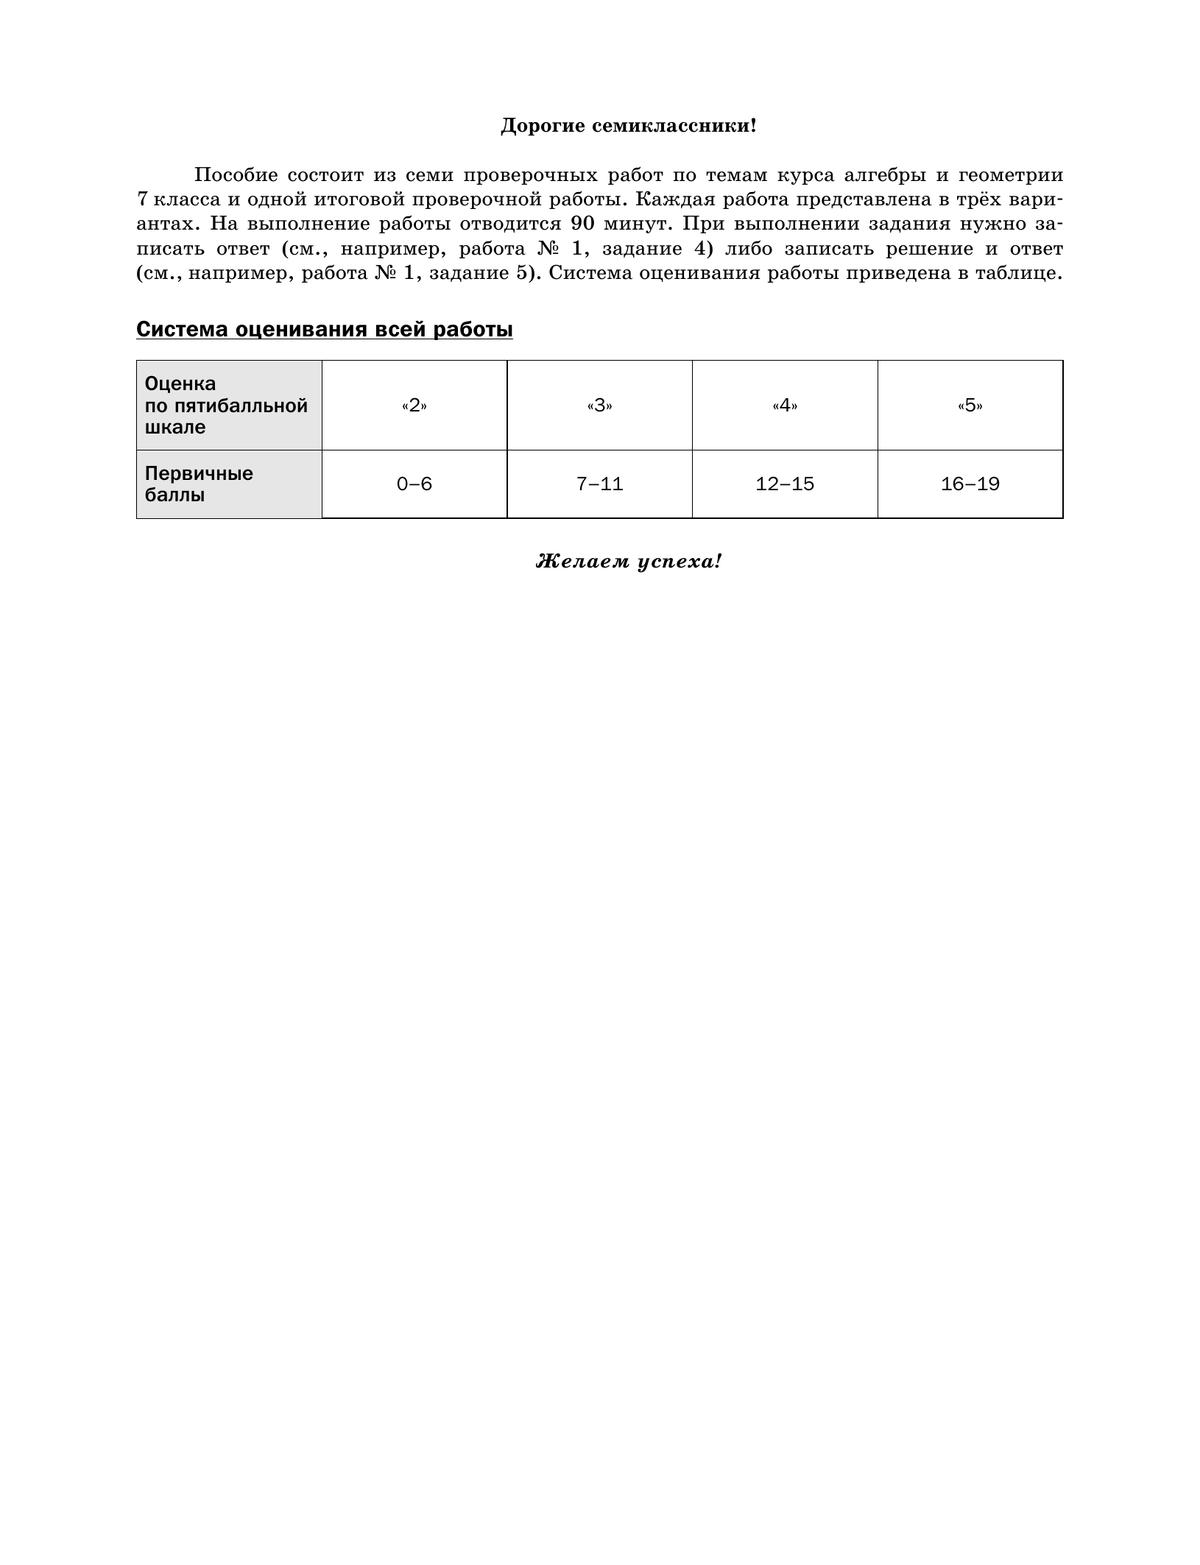 Алгебра. 7 класс. Подготовка к всероссийским проверочным работам (ВПР) (Буцко) 7